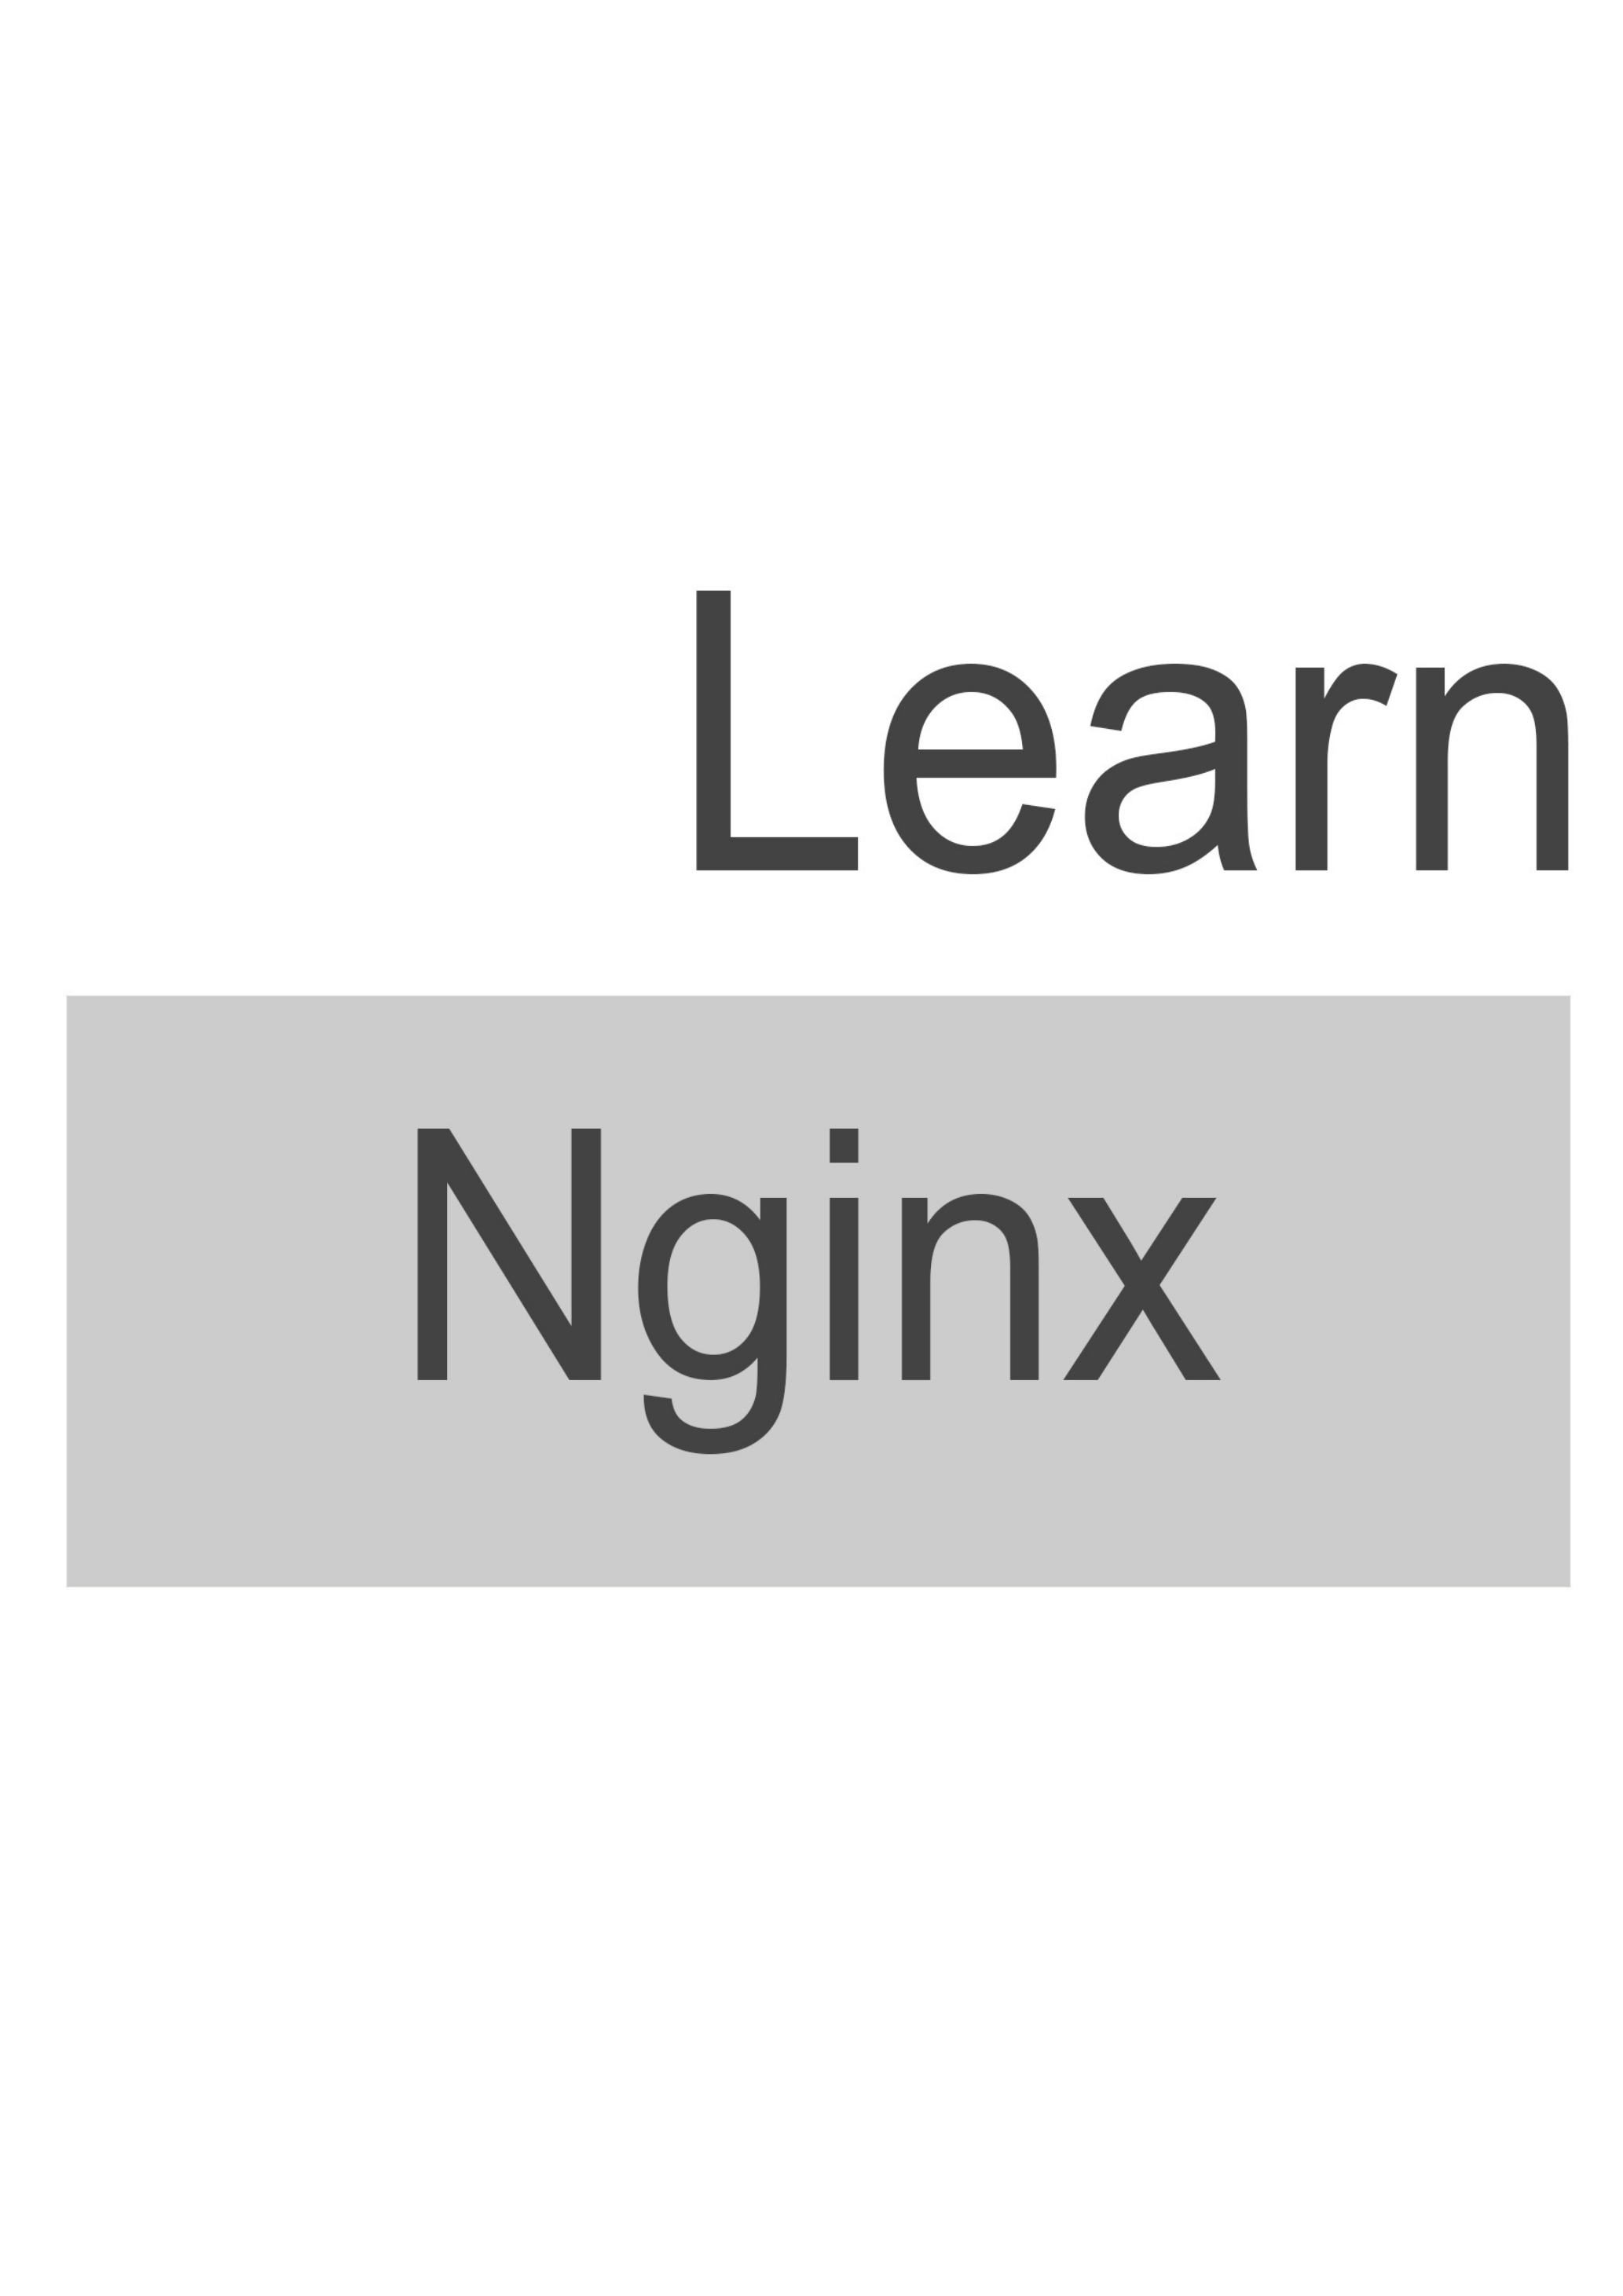 Learn _Nginx 封面